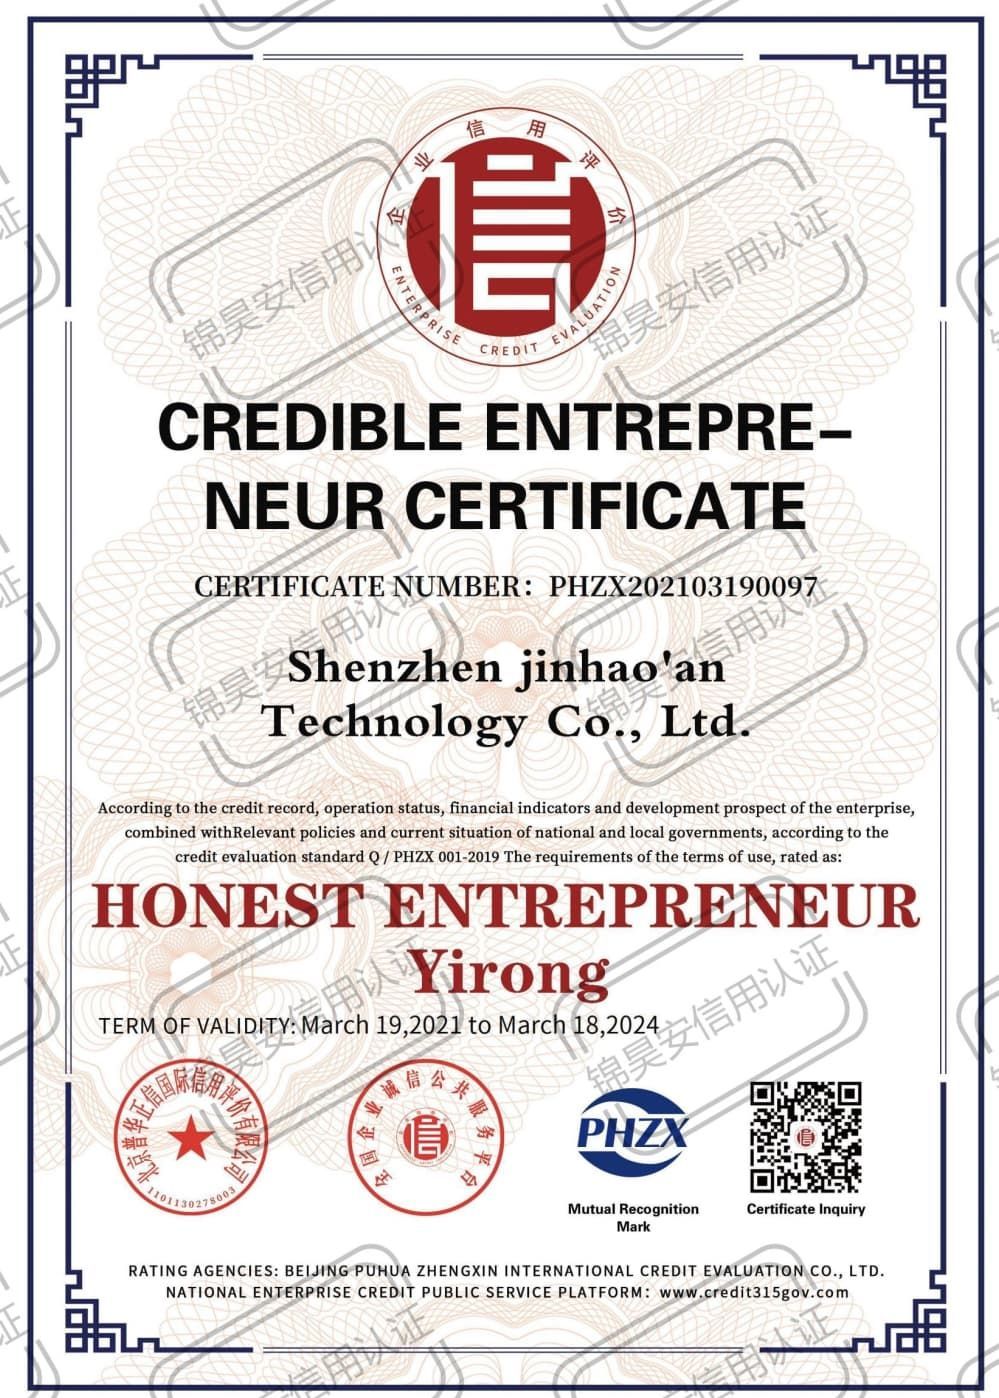 Credible Entrepreneur Certificate